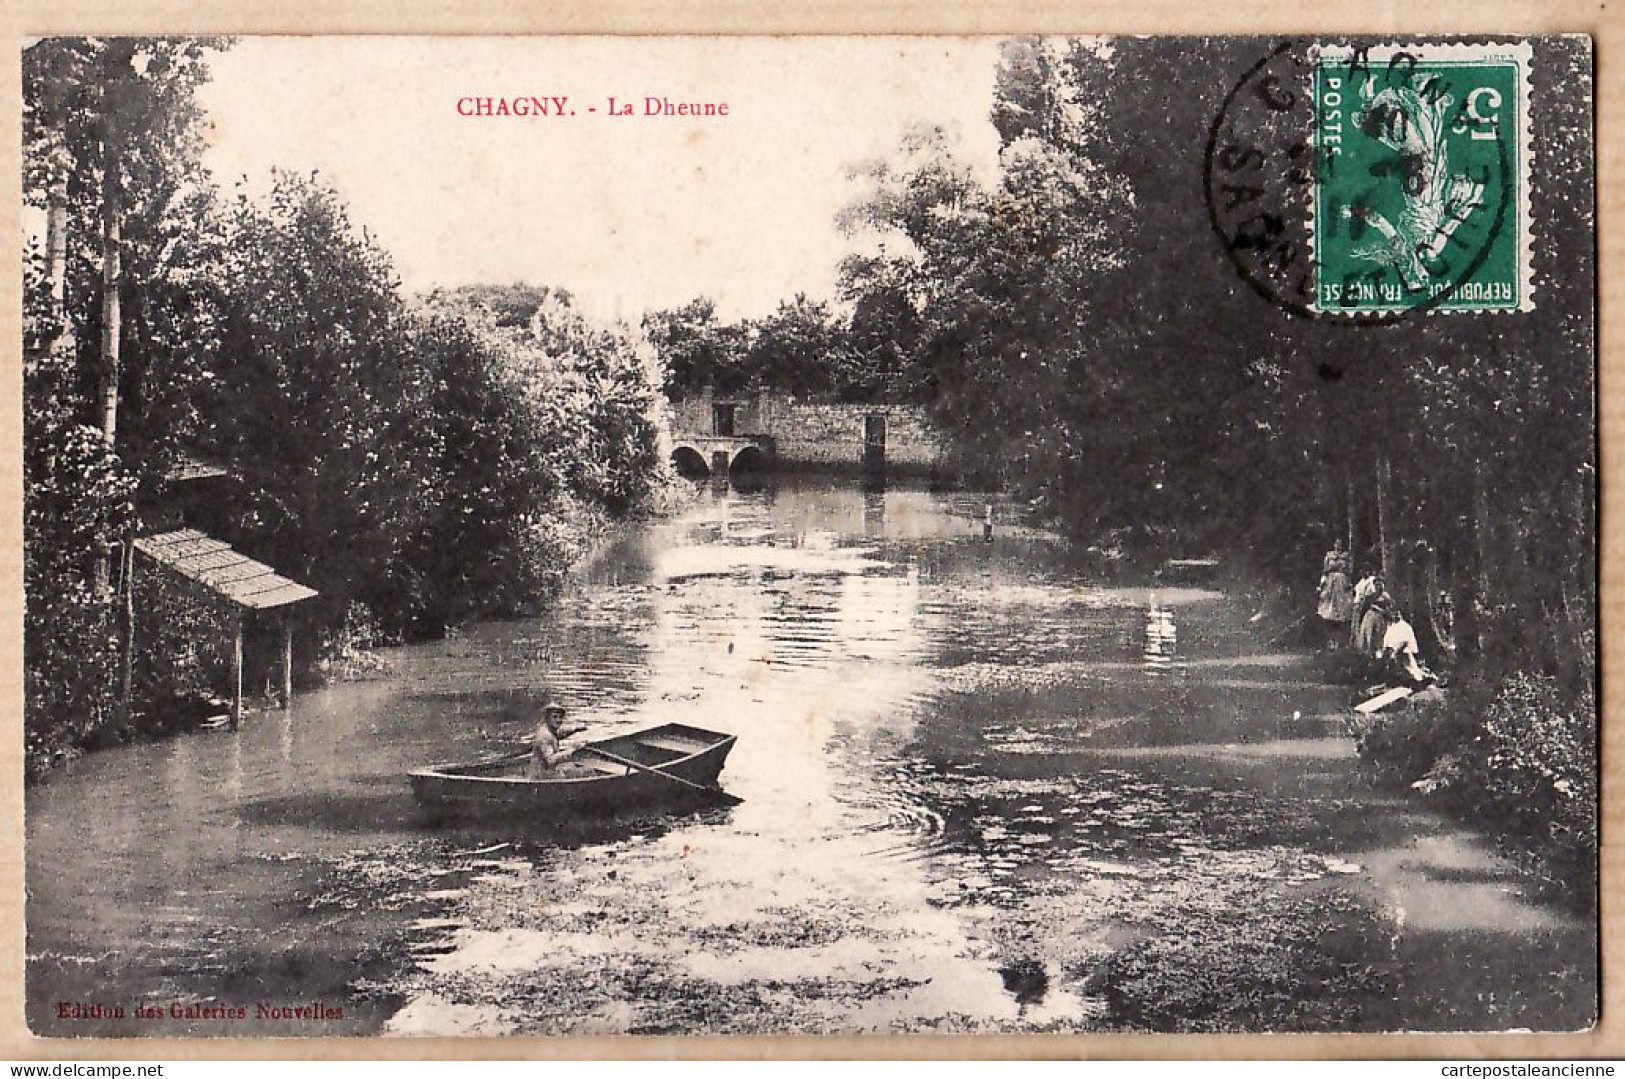 27128 / ⭐ CHAGNY 71-Saone-et-Loire Barque Animation Villageoise La DHEUNE 1911 à AUGER 19 Rue Ferdinand St Etienne - Chagny